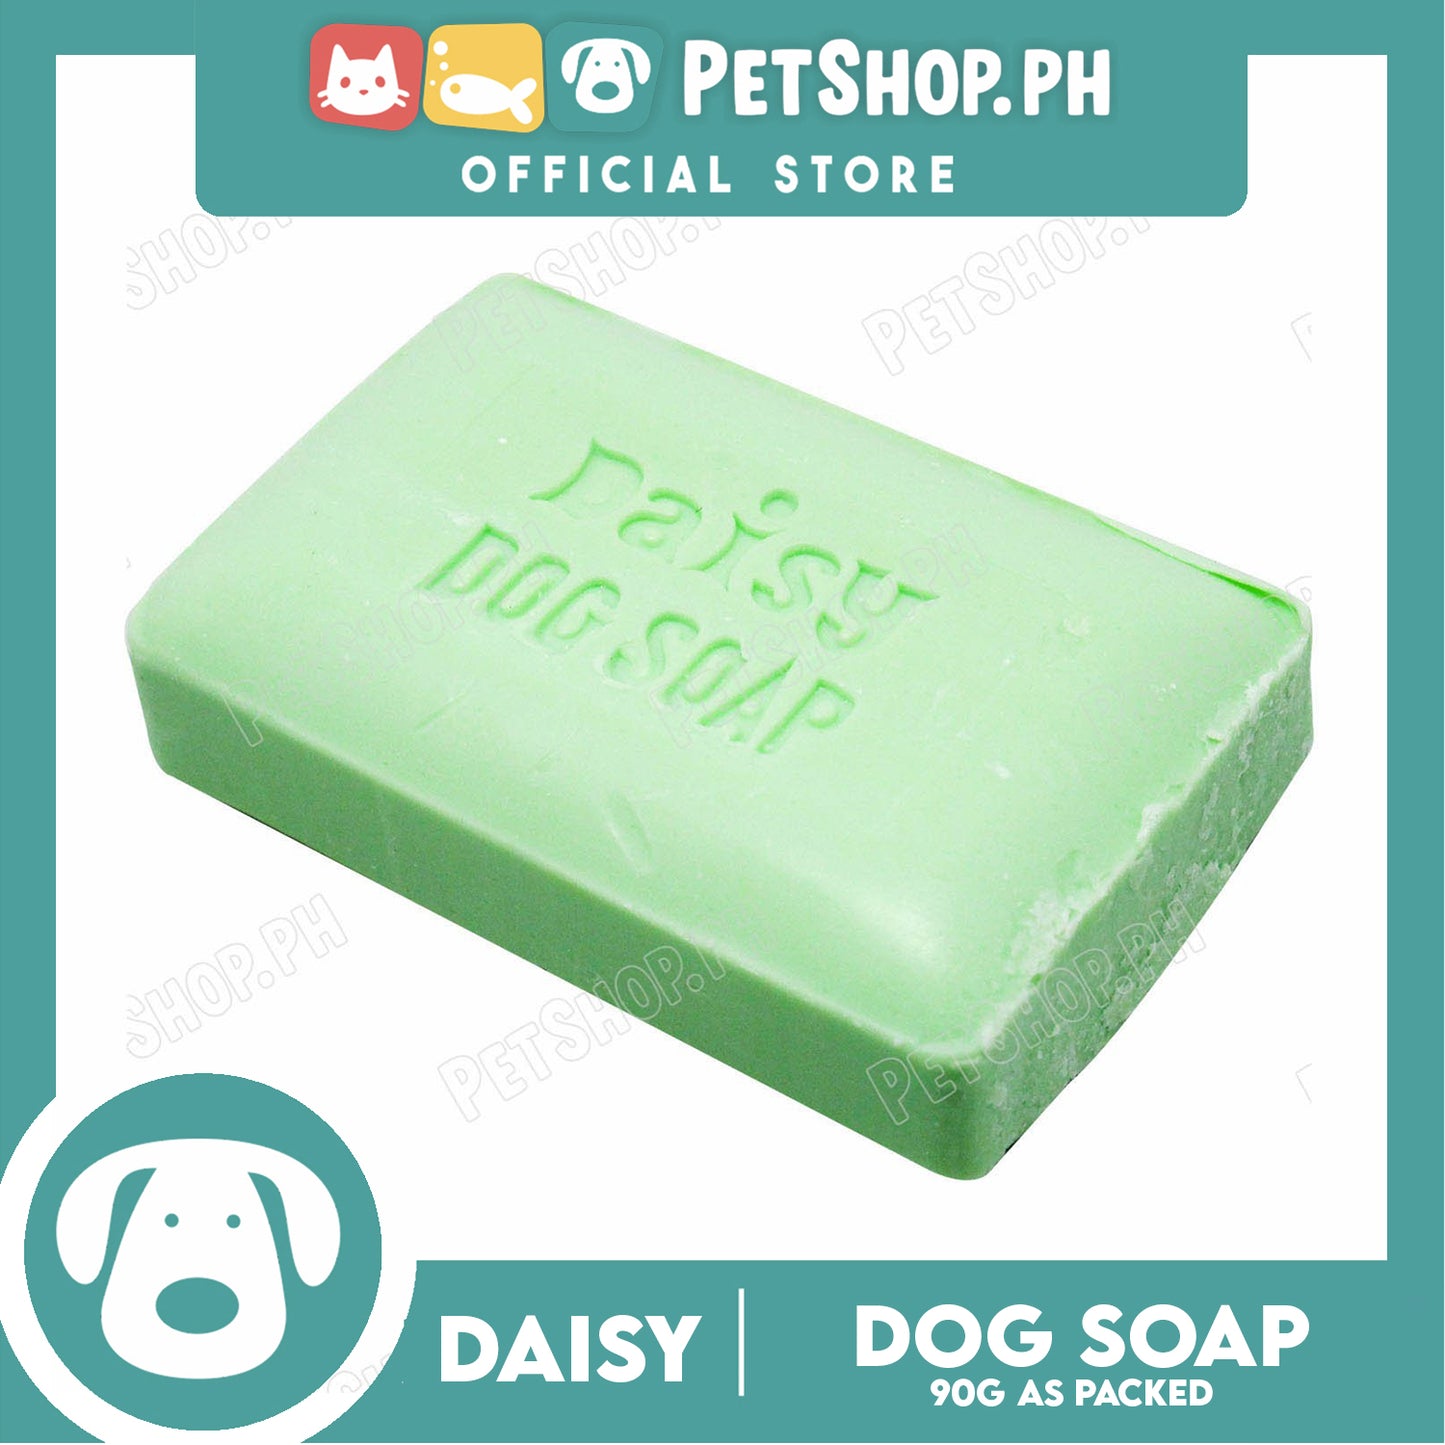 Daisy Dog Soap